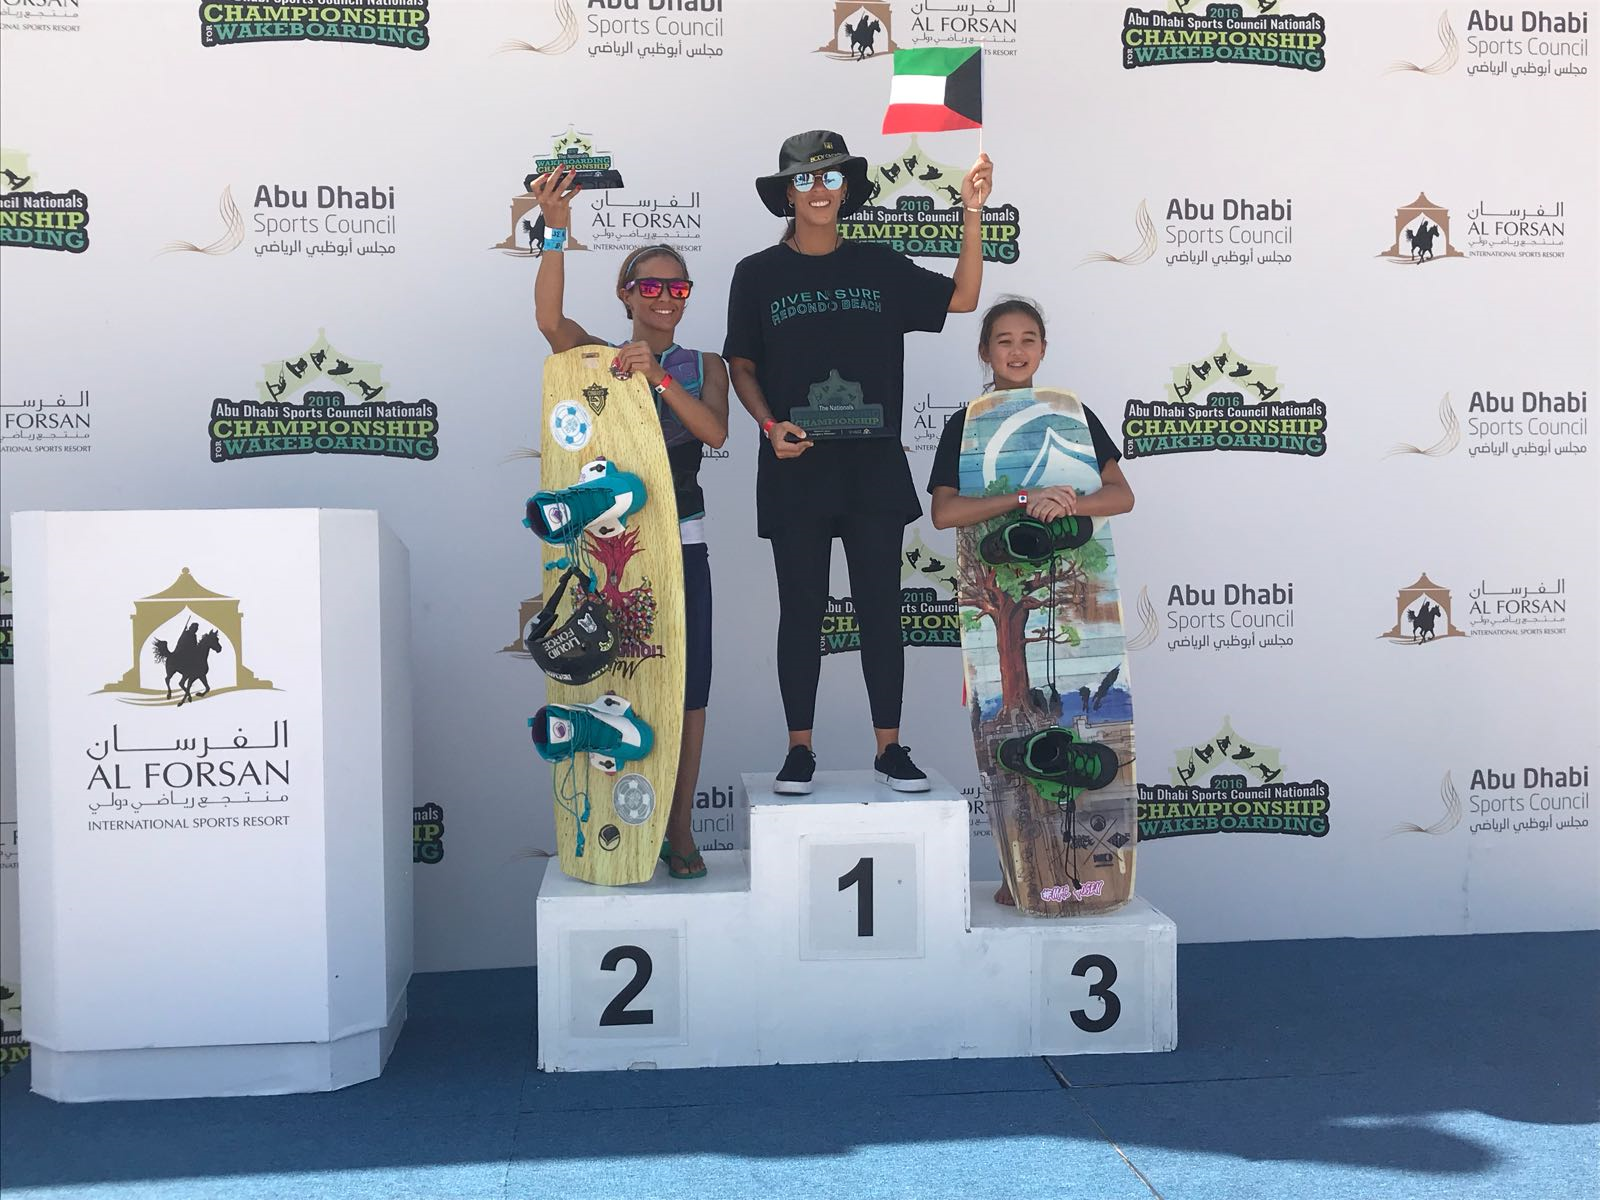 فوز النوري بذهبية في بطولة ملكة الركمجة التي أقيمت في أبو ظبي عام 2017